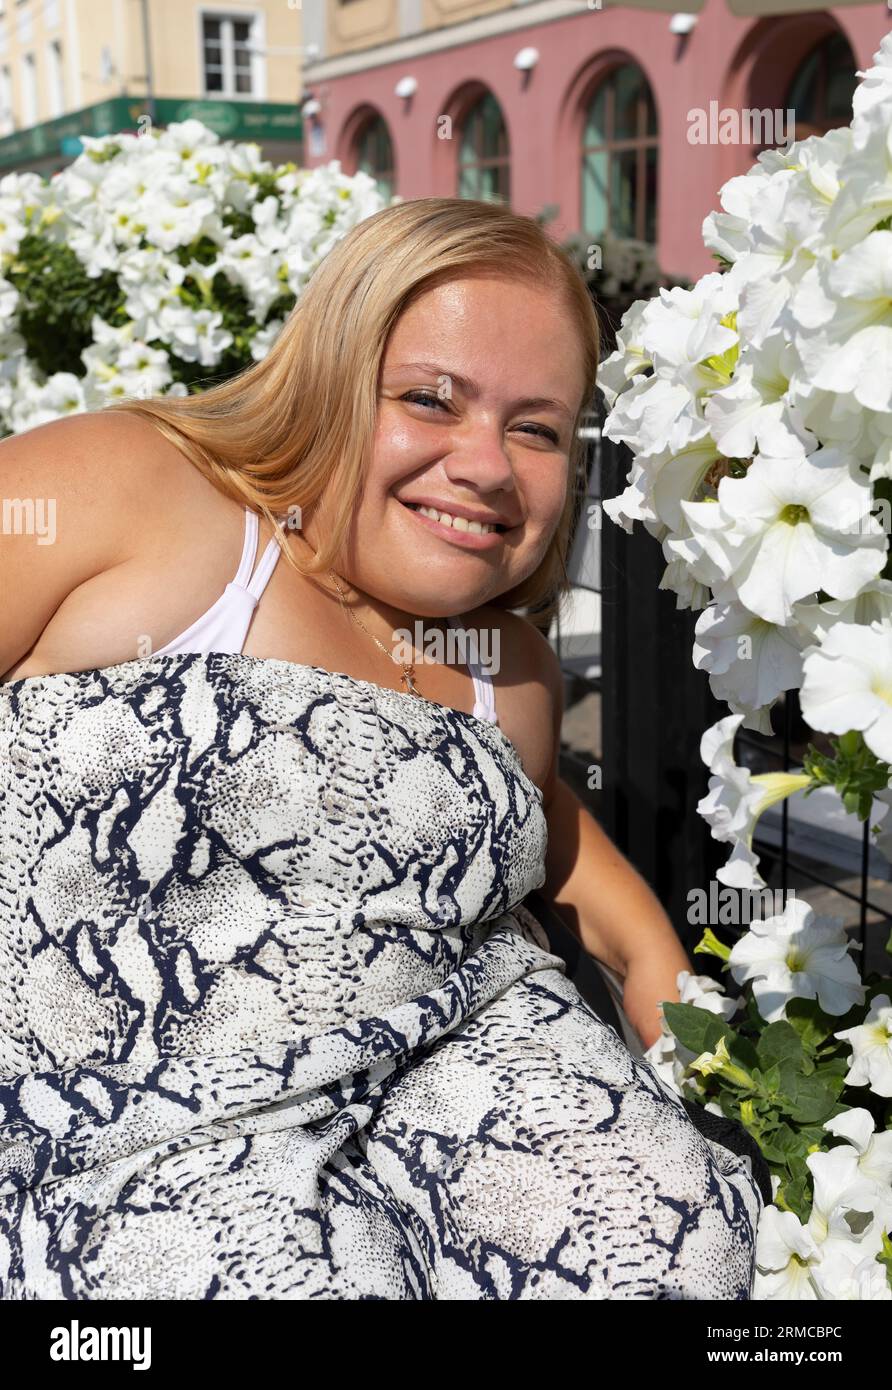 Jeune fille souriante avec petite stature sur fauteuil roulant posant près des suiveurs au jour de l'été. Portrait de Femme adulte avec handicap physique appréciant Banque D'Images